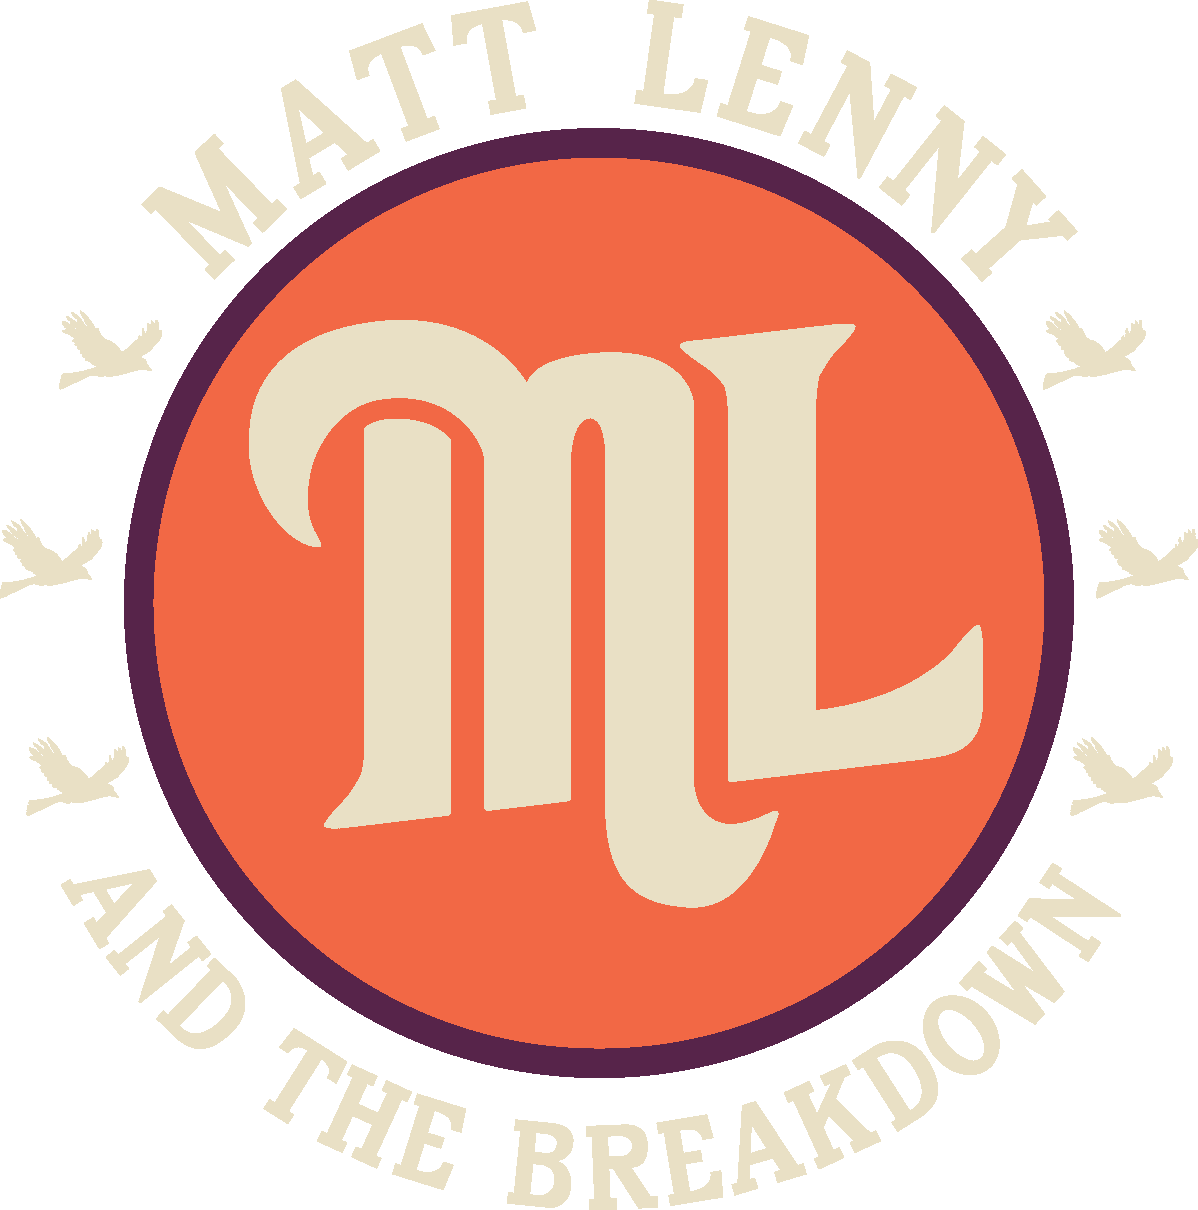 Matt Lenny